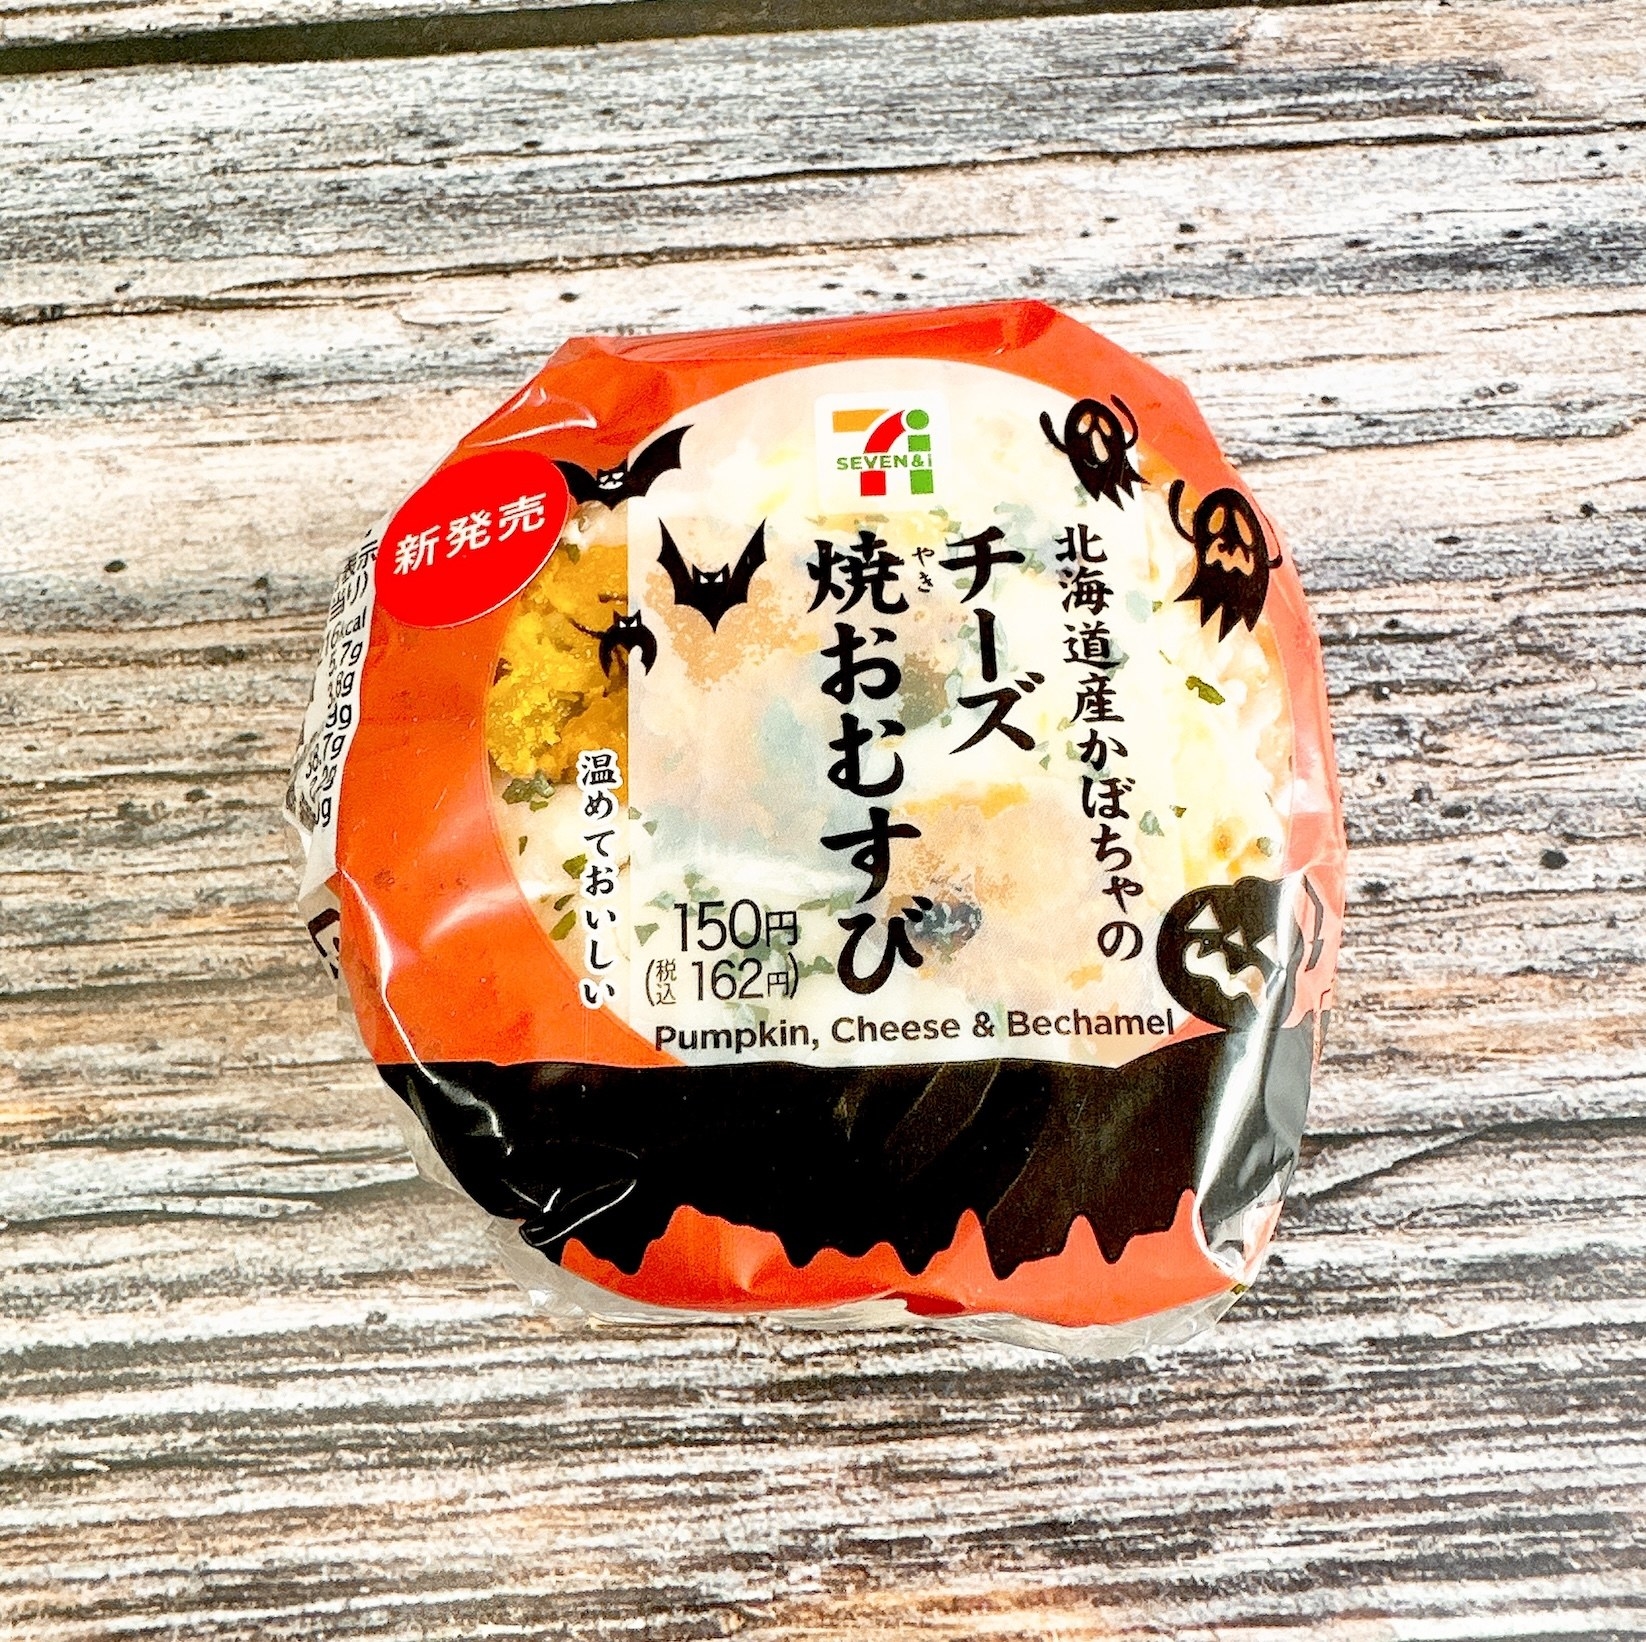 セブン-イレブンのおすすめ期間限定メニュー「北海道産かぼちゃのチーズ焼おむすび」